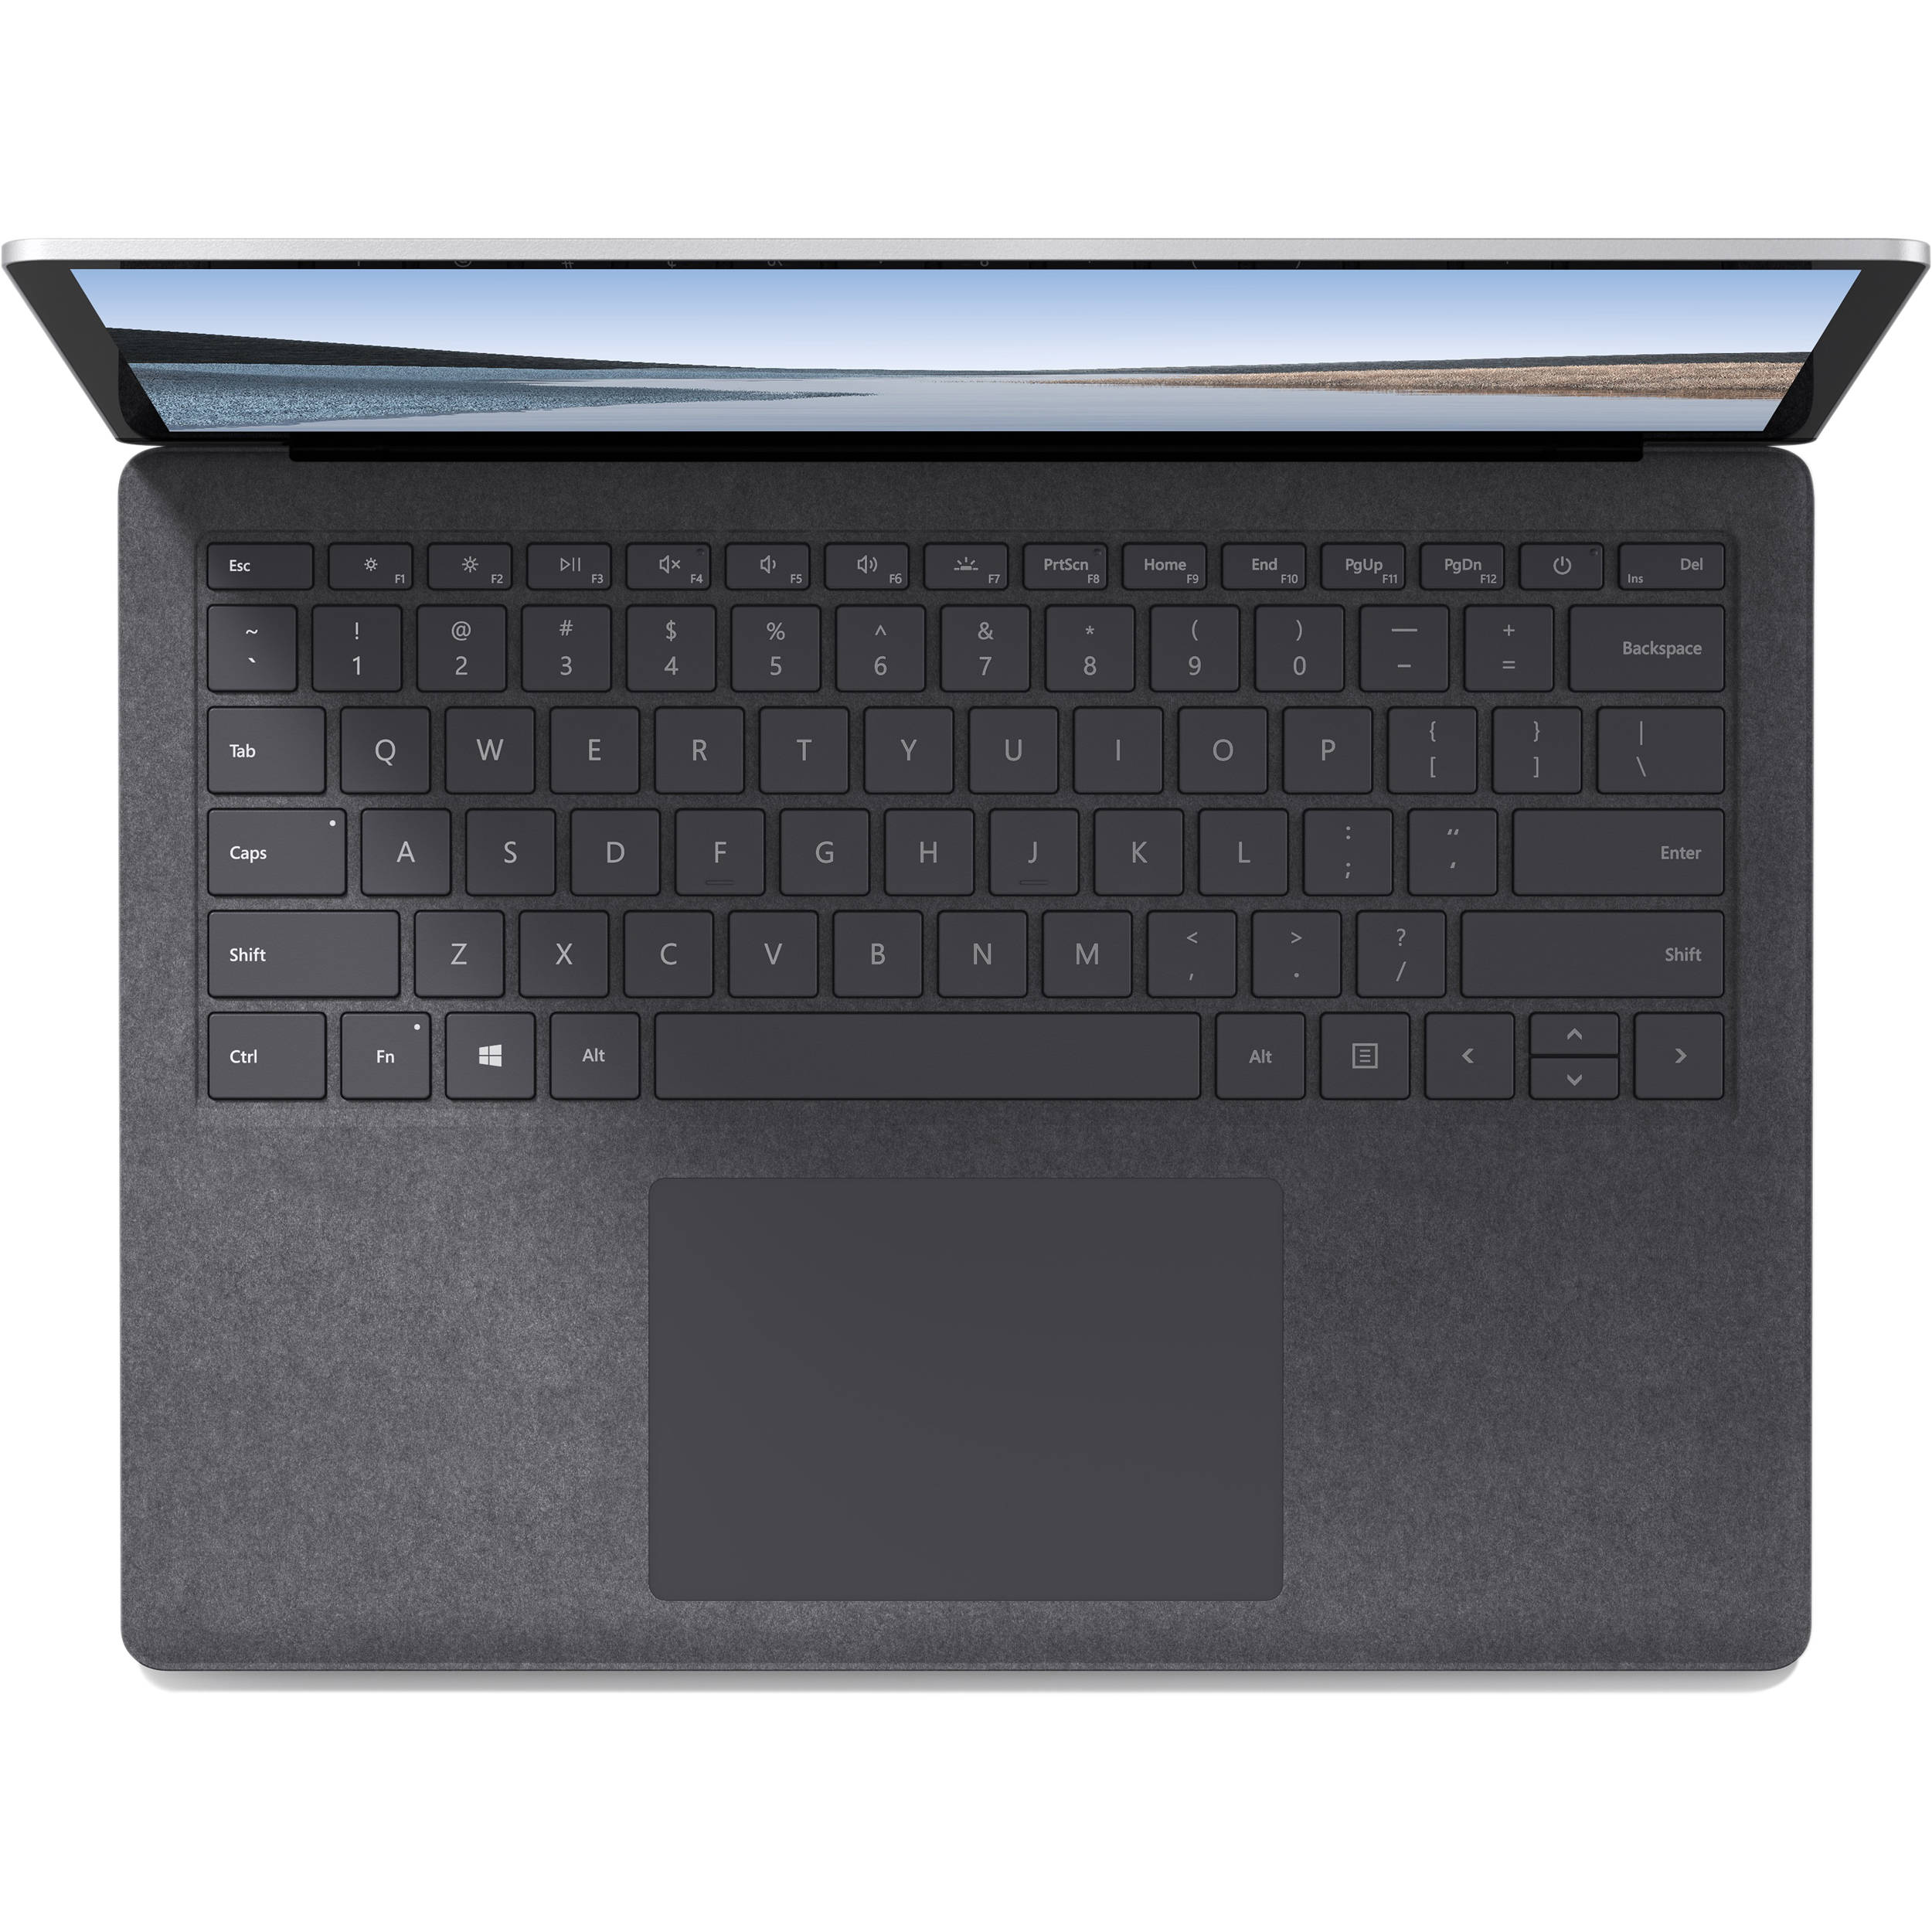 قیمت و مشخصات لپ تاپ 13 اینچی مایکروسافت مدل Surface Laptop 3 - E - زیراکو